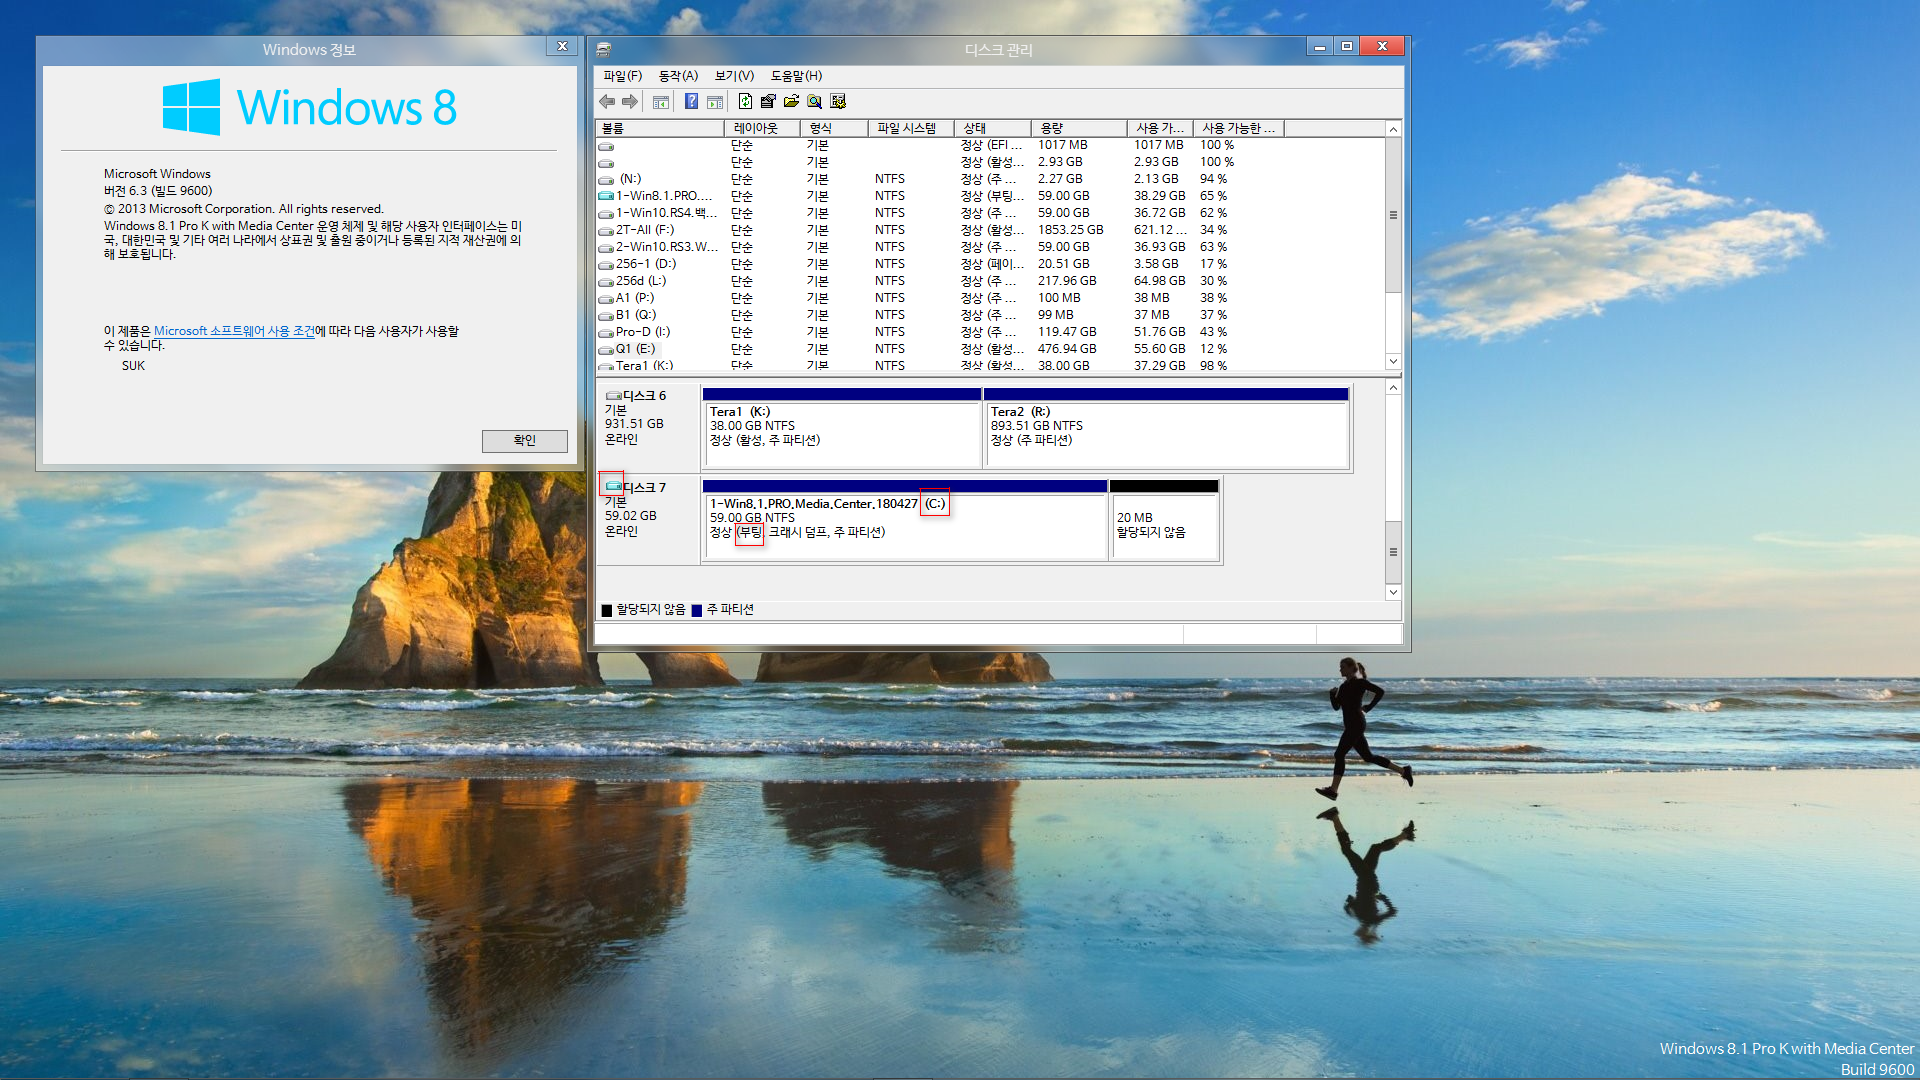 윈도8.1 시스템 백업 이미지 vhdx를 윈도10과 멀티 부팅하기 테스트 - 엉뚱한 드라이브까지 백업하려고 하네요 - 그래서 명령어로 C드라이브만 백업했습니다 - 윈도10 복구 - 백업한 vhdx 멀티부팅 추가 - vhdx로 로그인 실패함-reg명령으로드라이브문자제거함-vhdx부팅성공 2018-05-19_162418.png